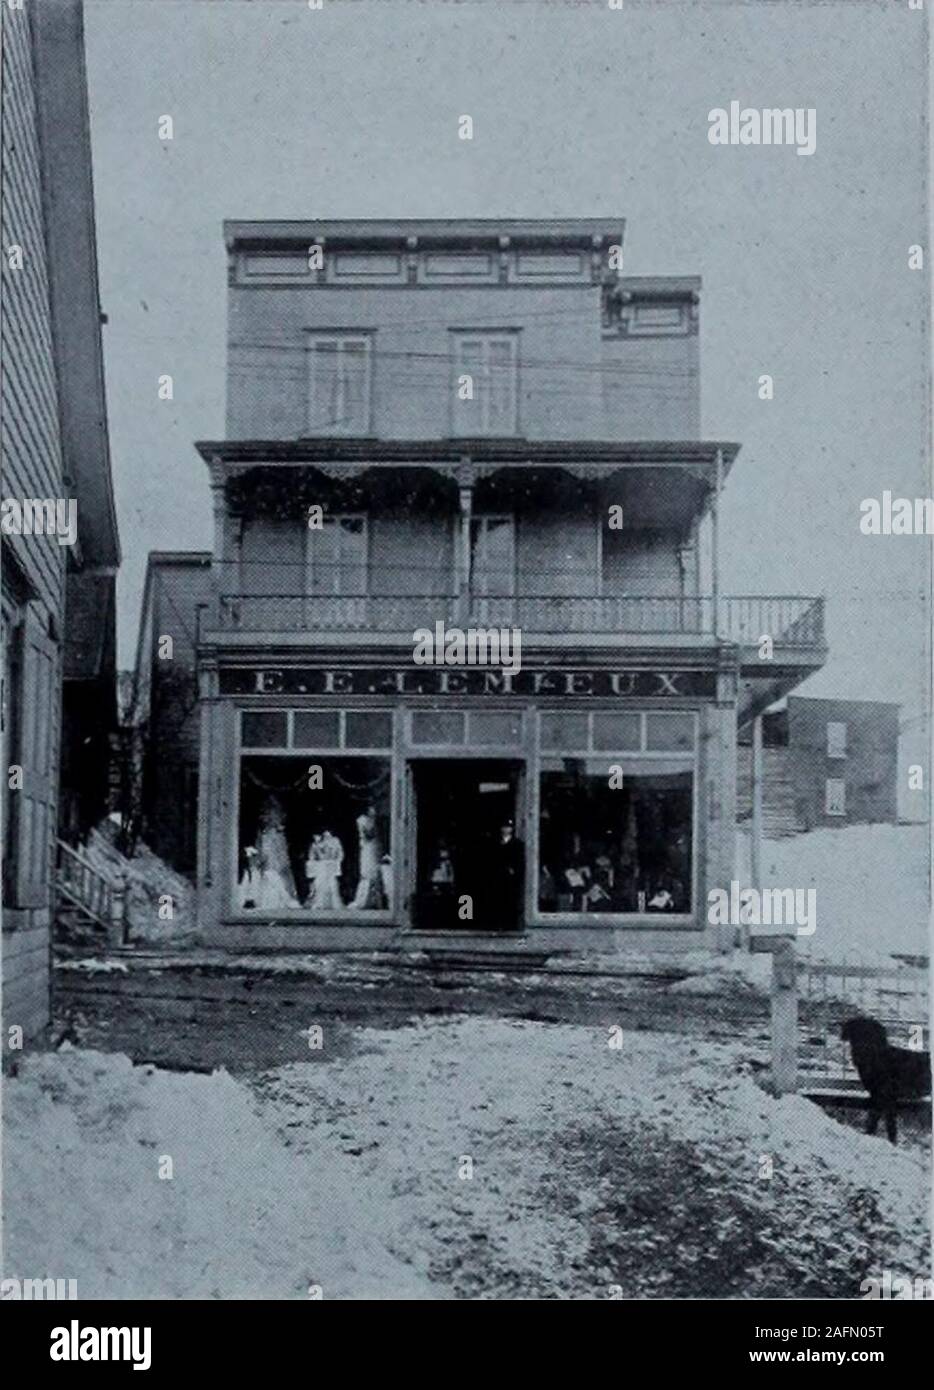 The town of Levis & environs P.Q. Canada, 1912. Photo by A. R. Roy H.  THIVIERGEVille Lauzon de L6vis. E. E. LEMIEUXBienville, Levis Ice Merchant  Marchand de Glace Dry Goods. Ready-made